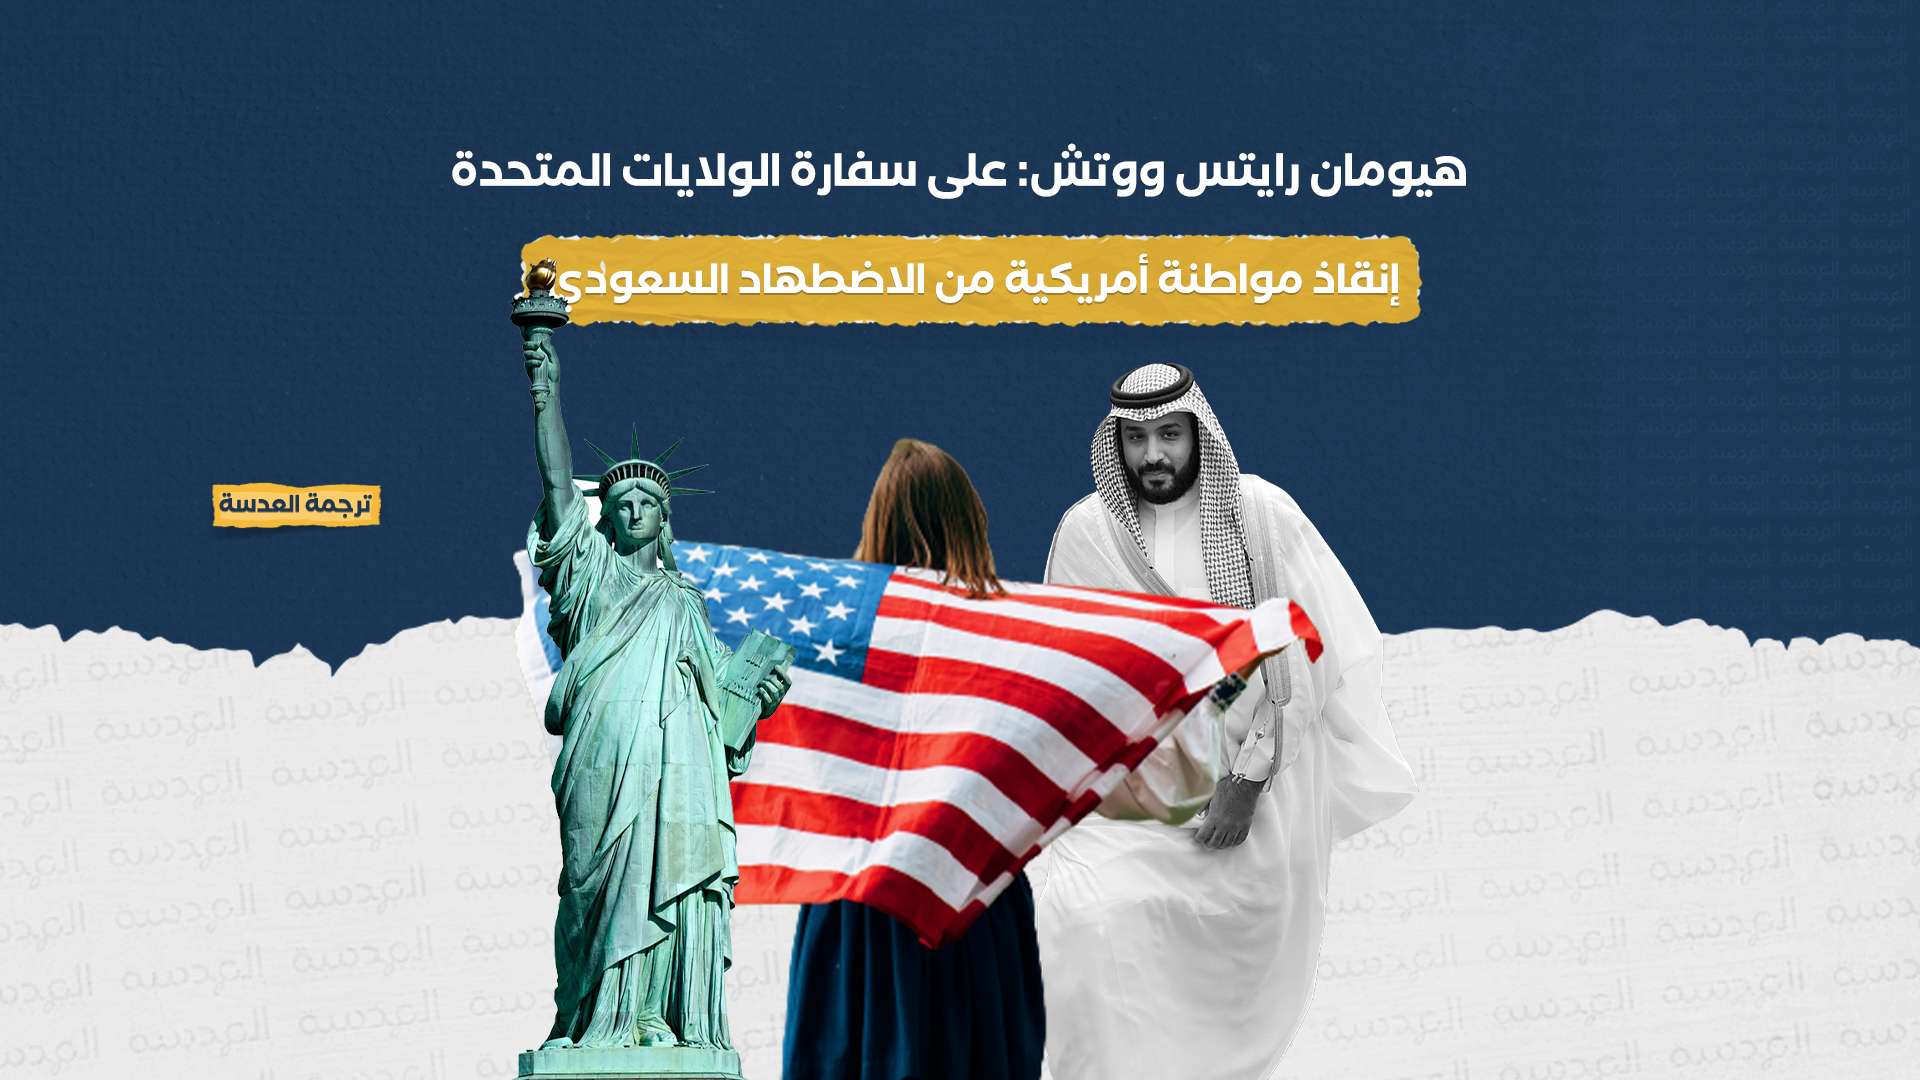 هيومان رايتس ووتش: على سفارة الولايات المتحدة إنقاذ مواطنة أمريكية من الاضطهاد السعودي